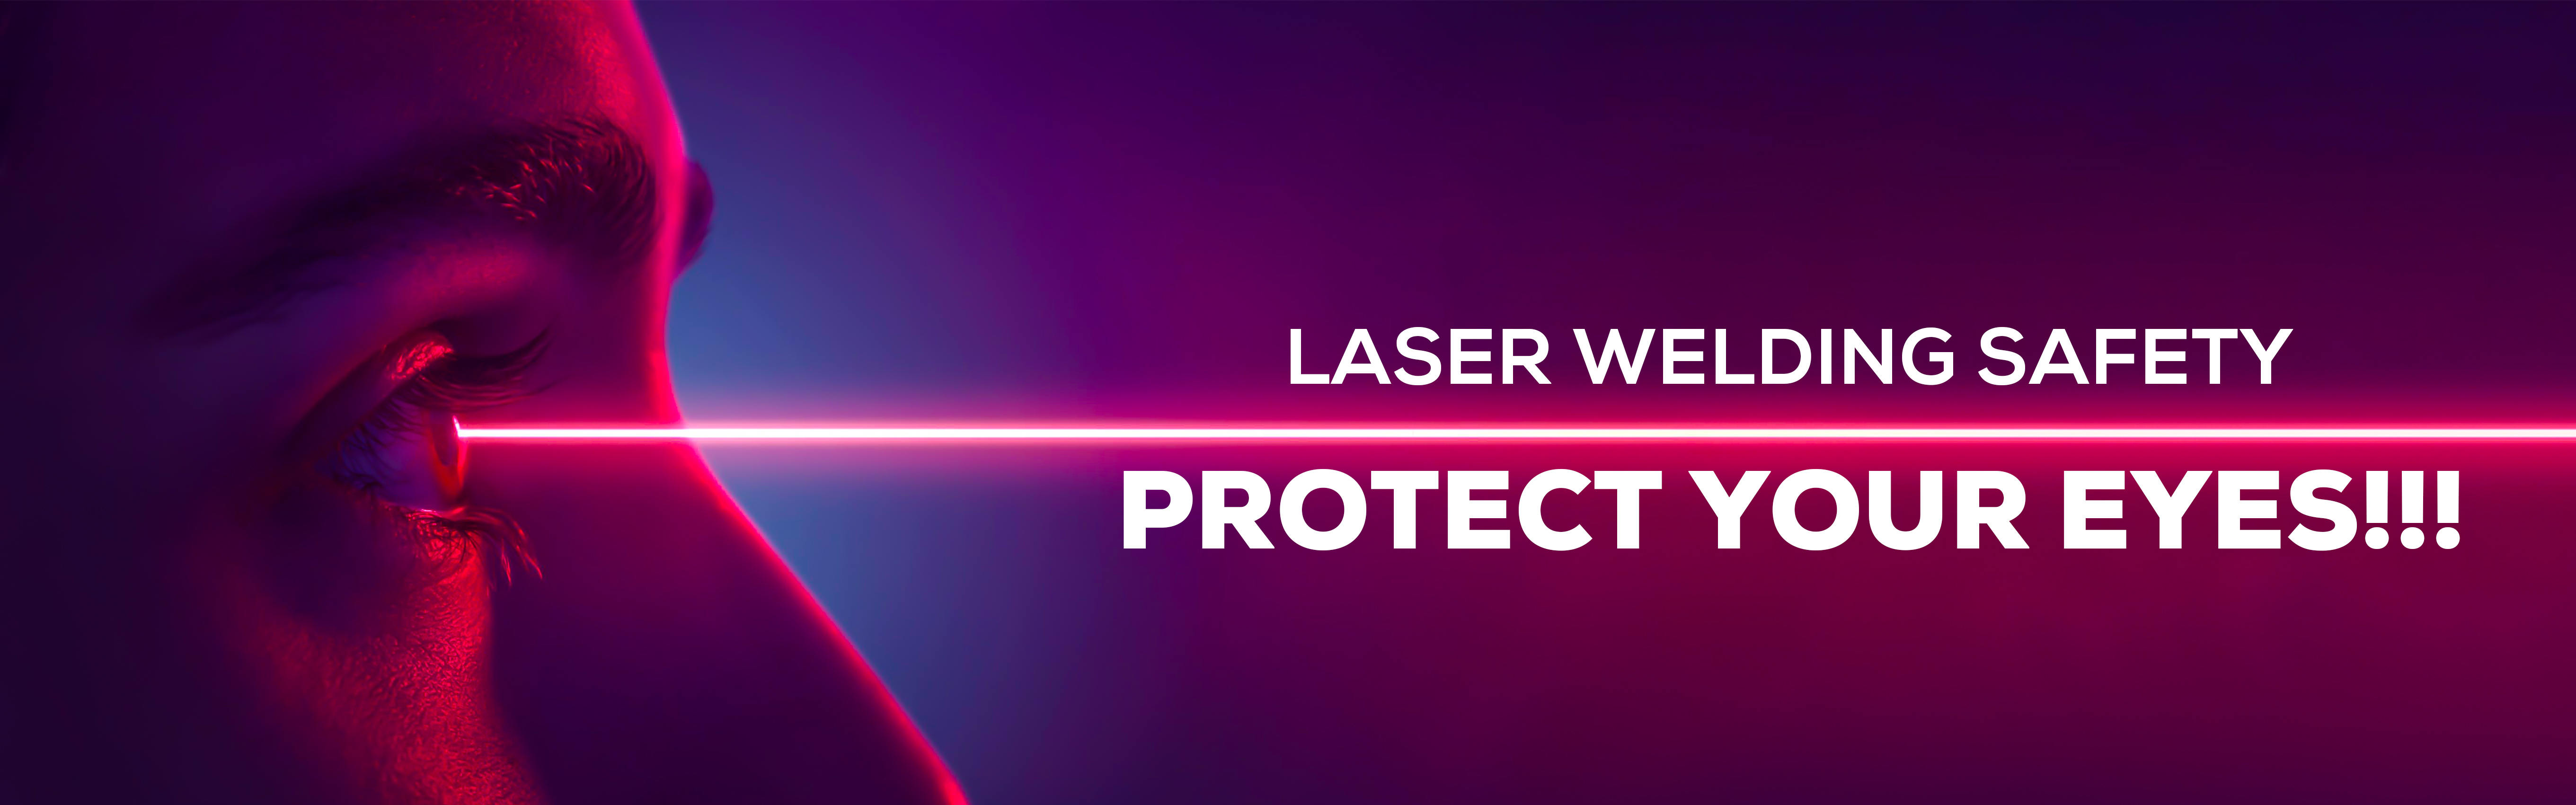 bezpieczeństwo spawania laserowego